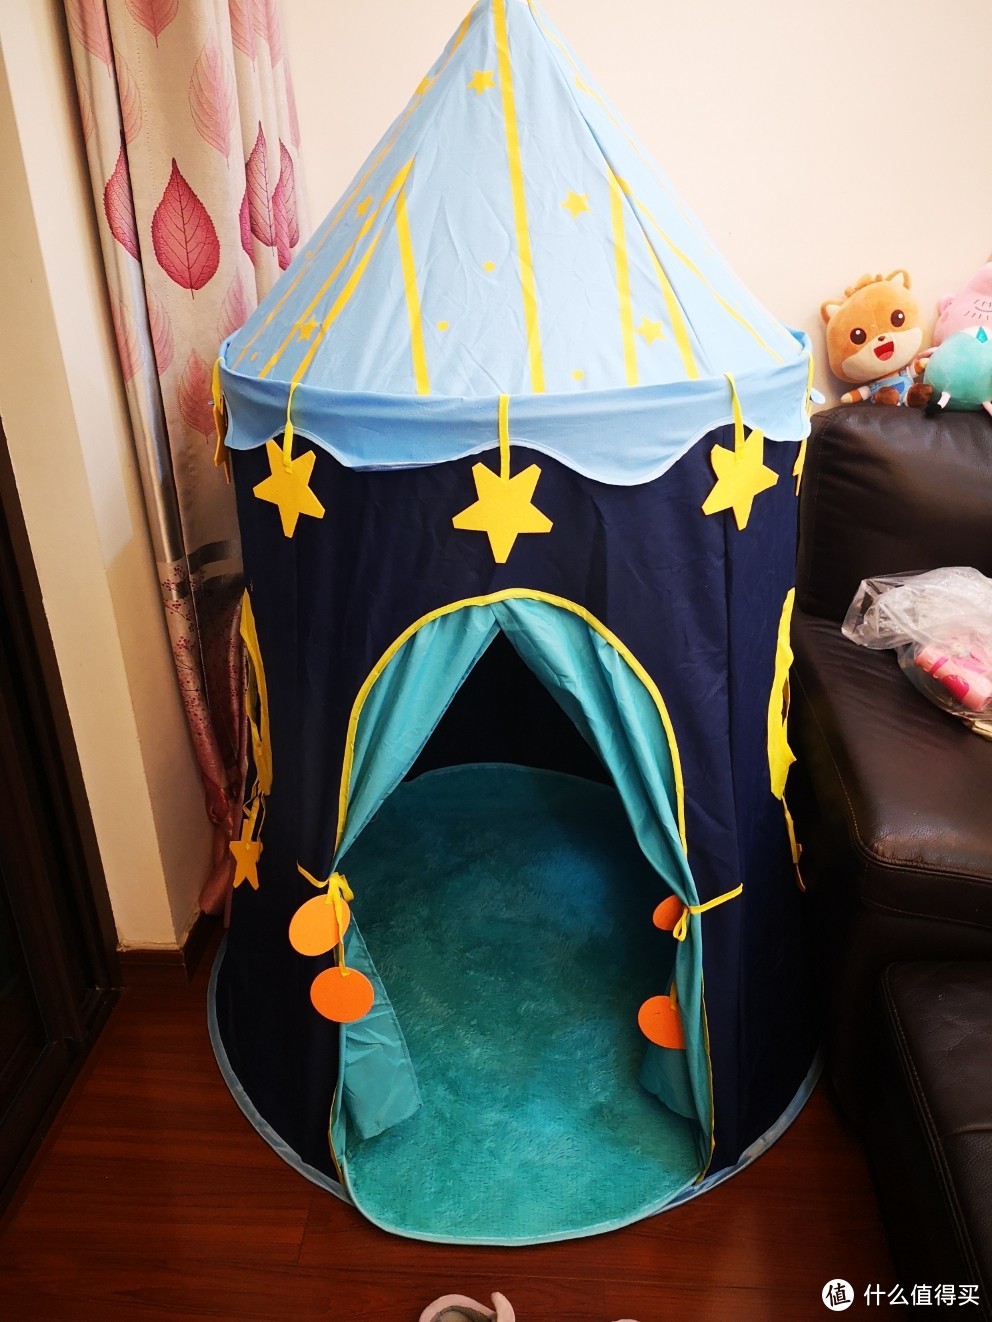 小孩都爱的室内城堡—马博士儿童帐篷